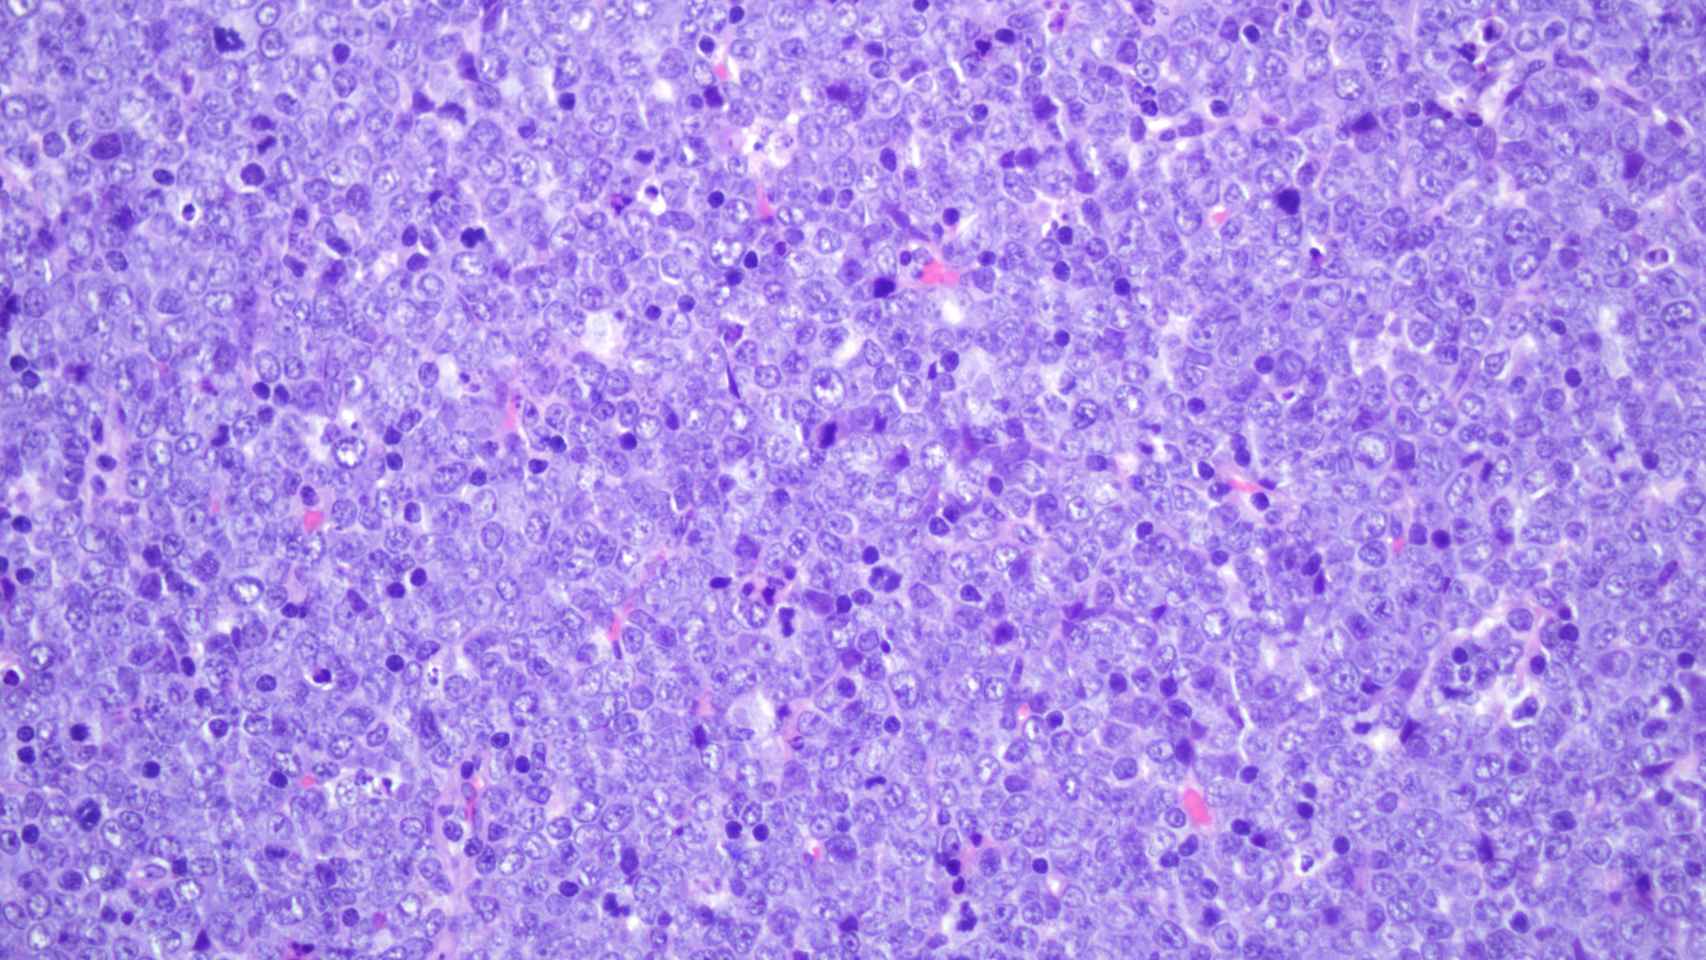 Histología de un nódulo linfático de un ratón con leucemia linfoblástica aguda